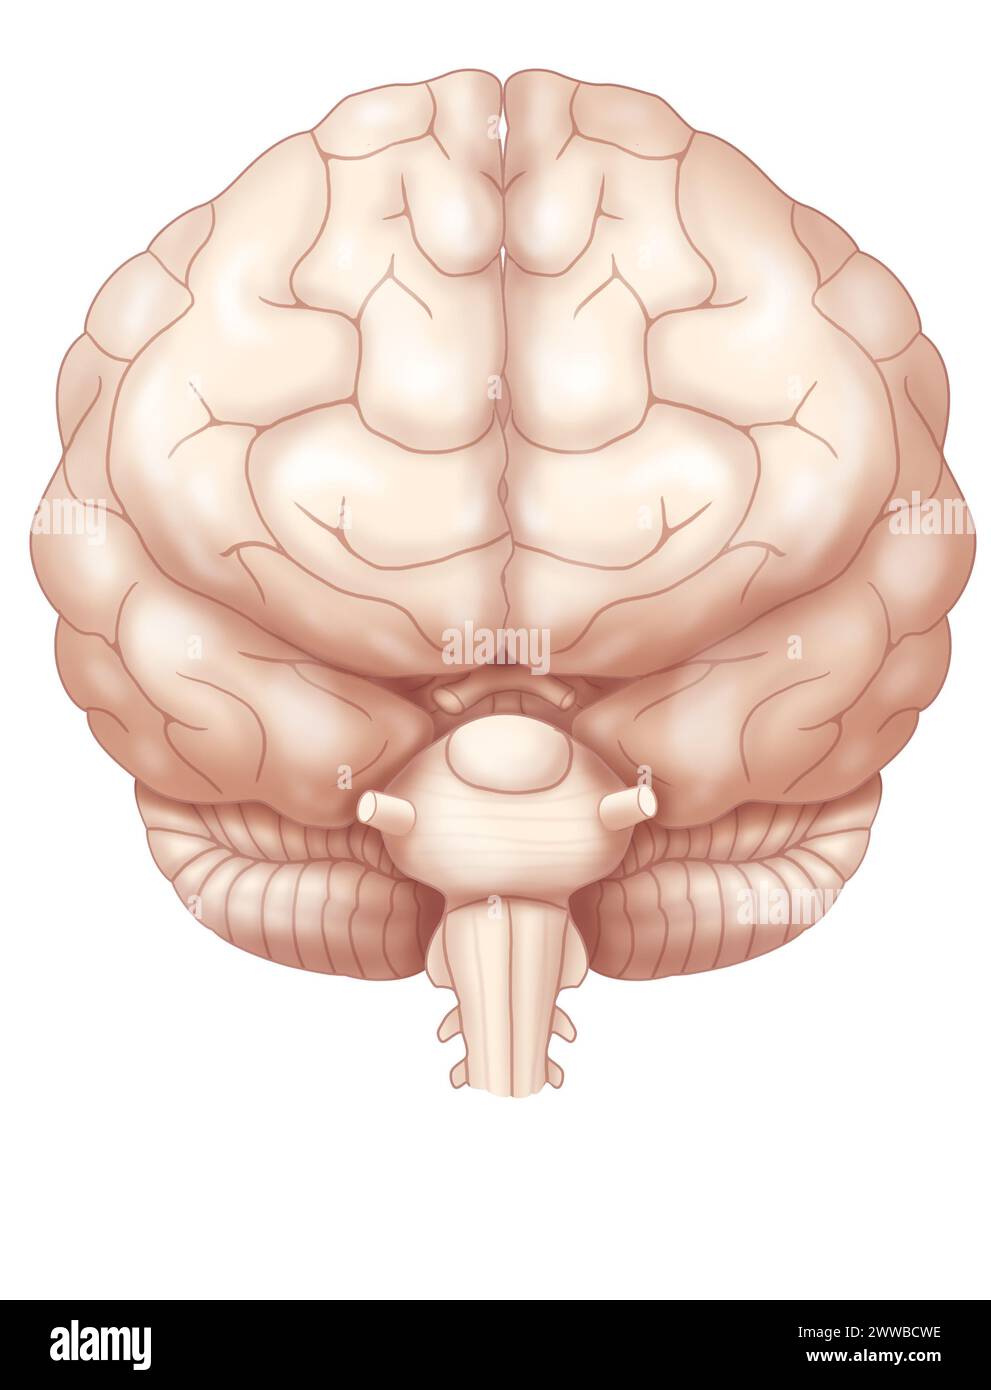 Vorderansicht des Gehirns mit den beiden Hirnhemisphären, dem Kleinhirn und dem Beginn des Hirnstamms. Stockfoto